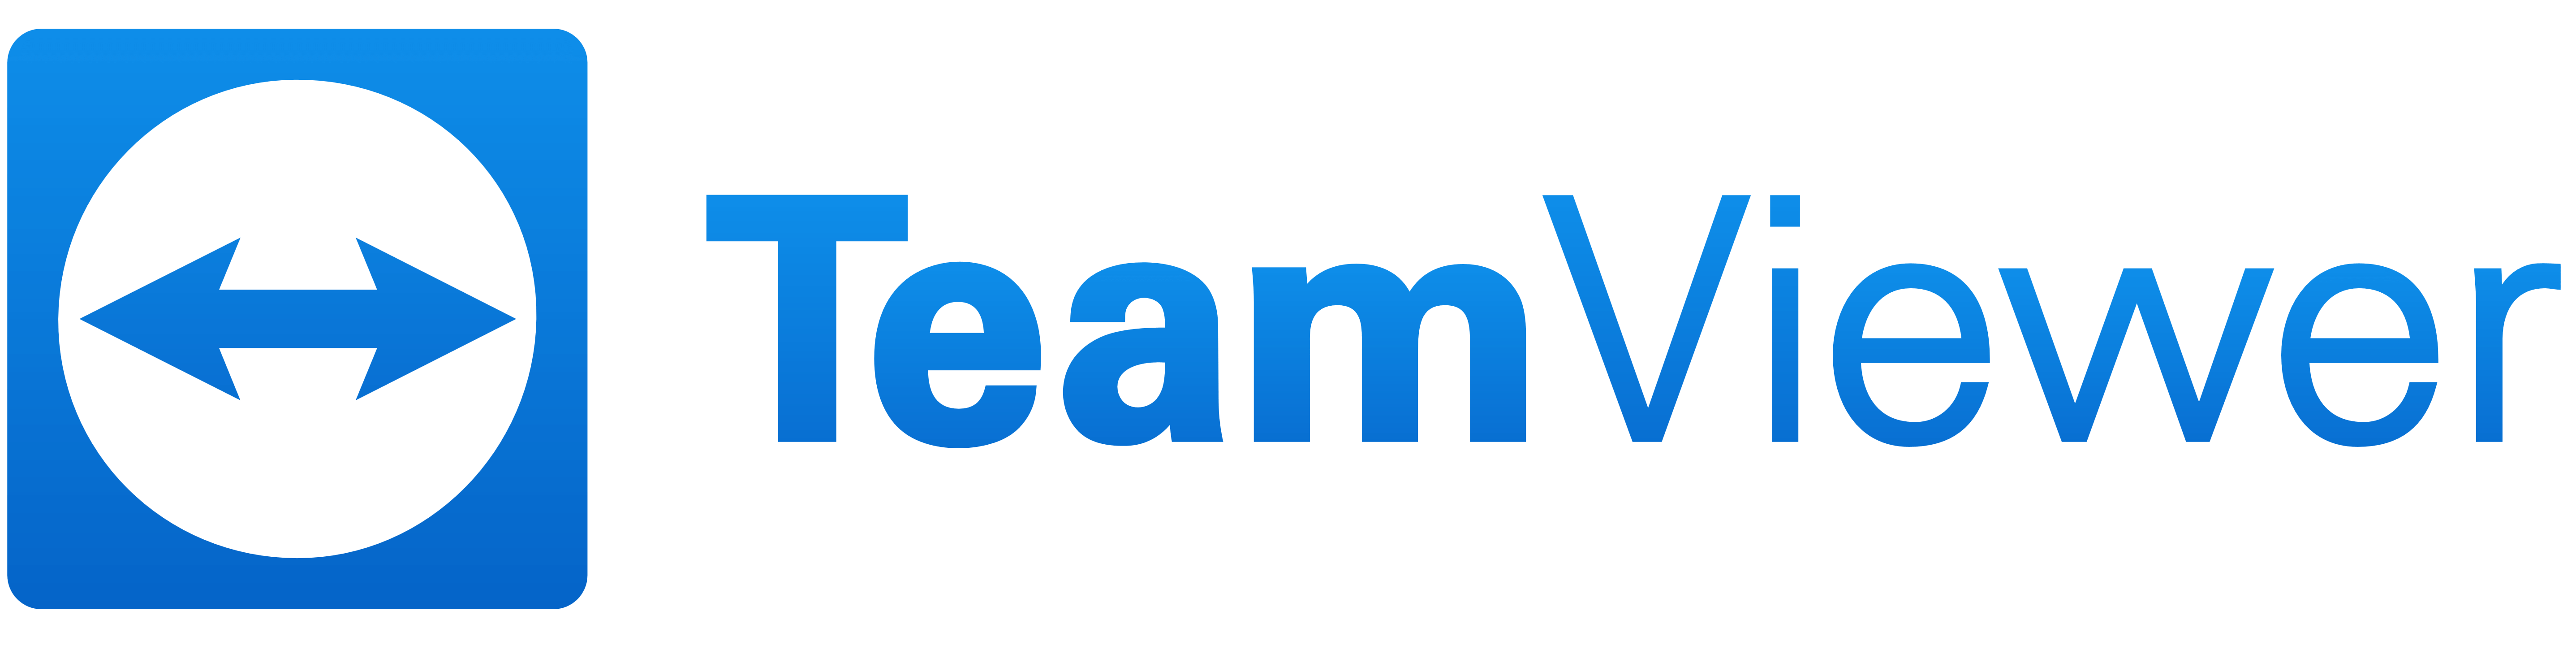 TeamViewer logo, logotype